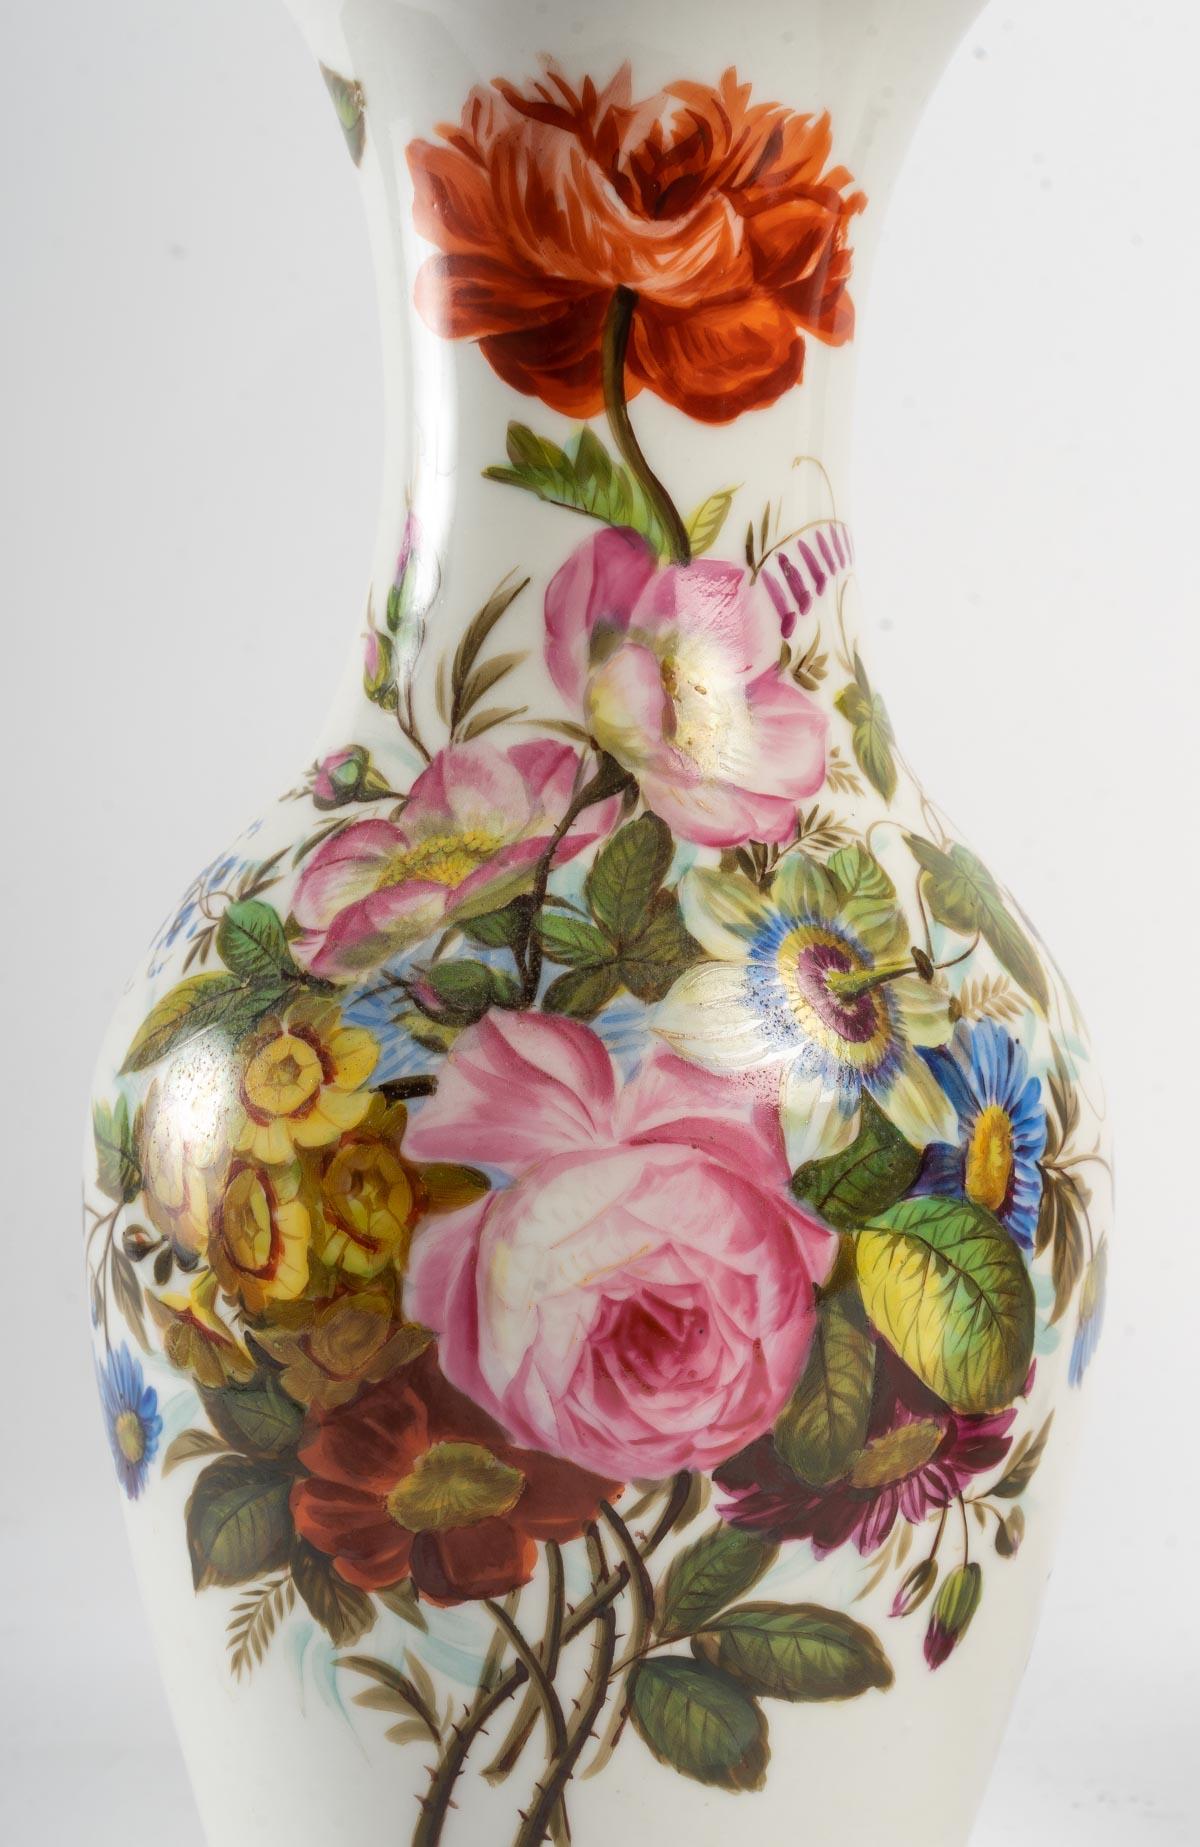 A pair of Louis Philippe Old Paris porcelain vases, 19th century.
Measures: H: 34 cm, D: 19 cm.